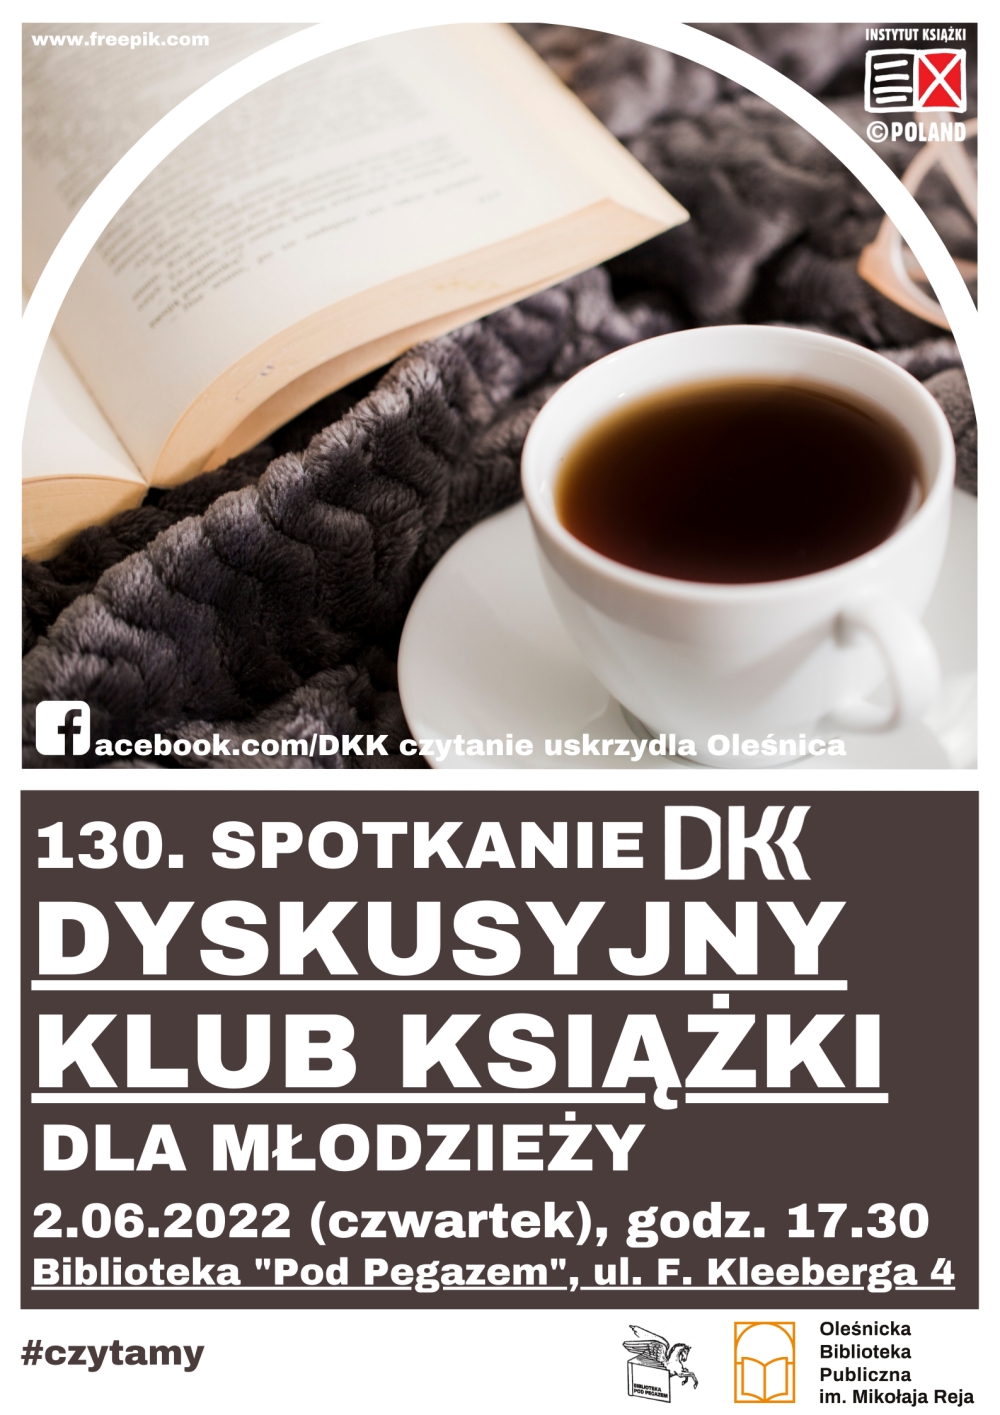 Plakat promujący 130 spotkanie DKK dla Młodzieży